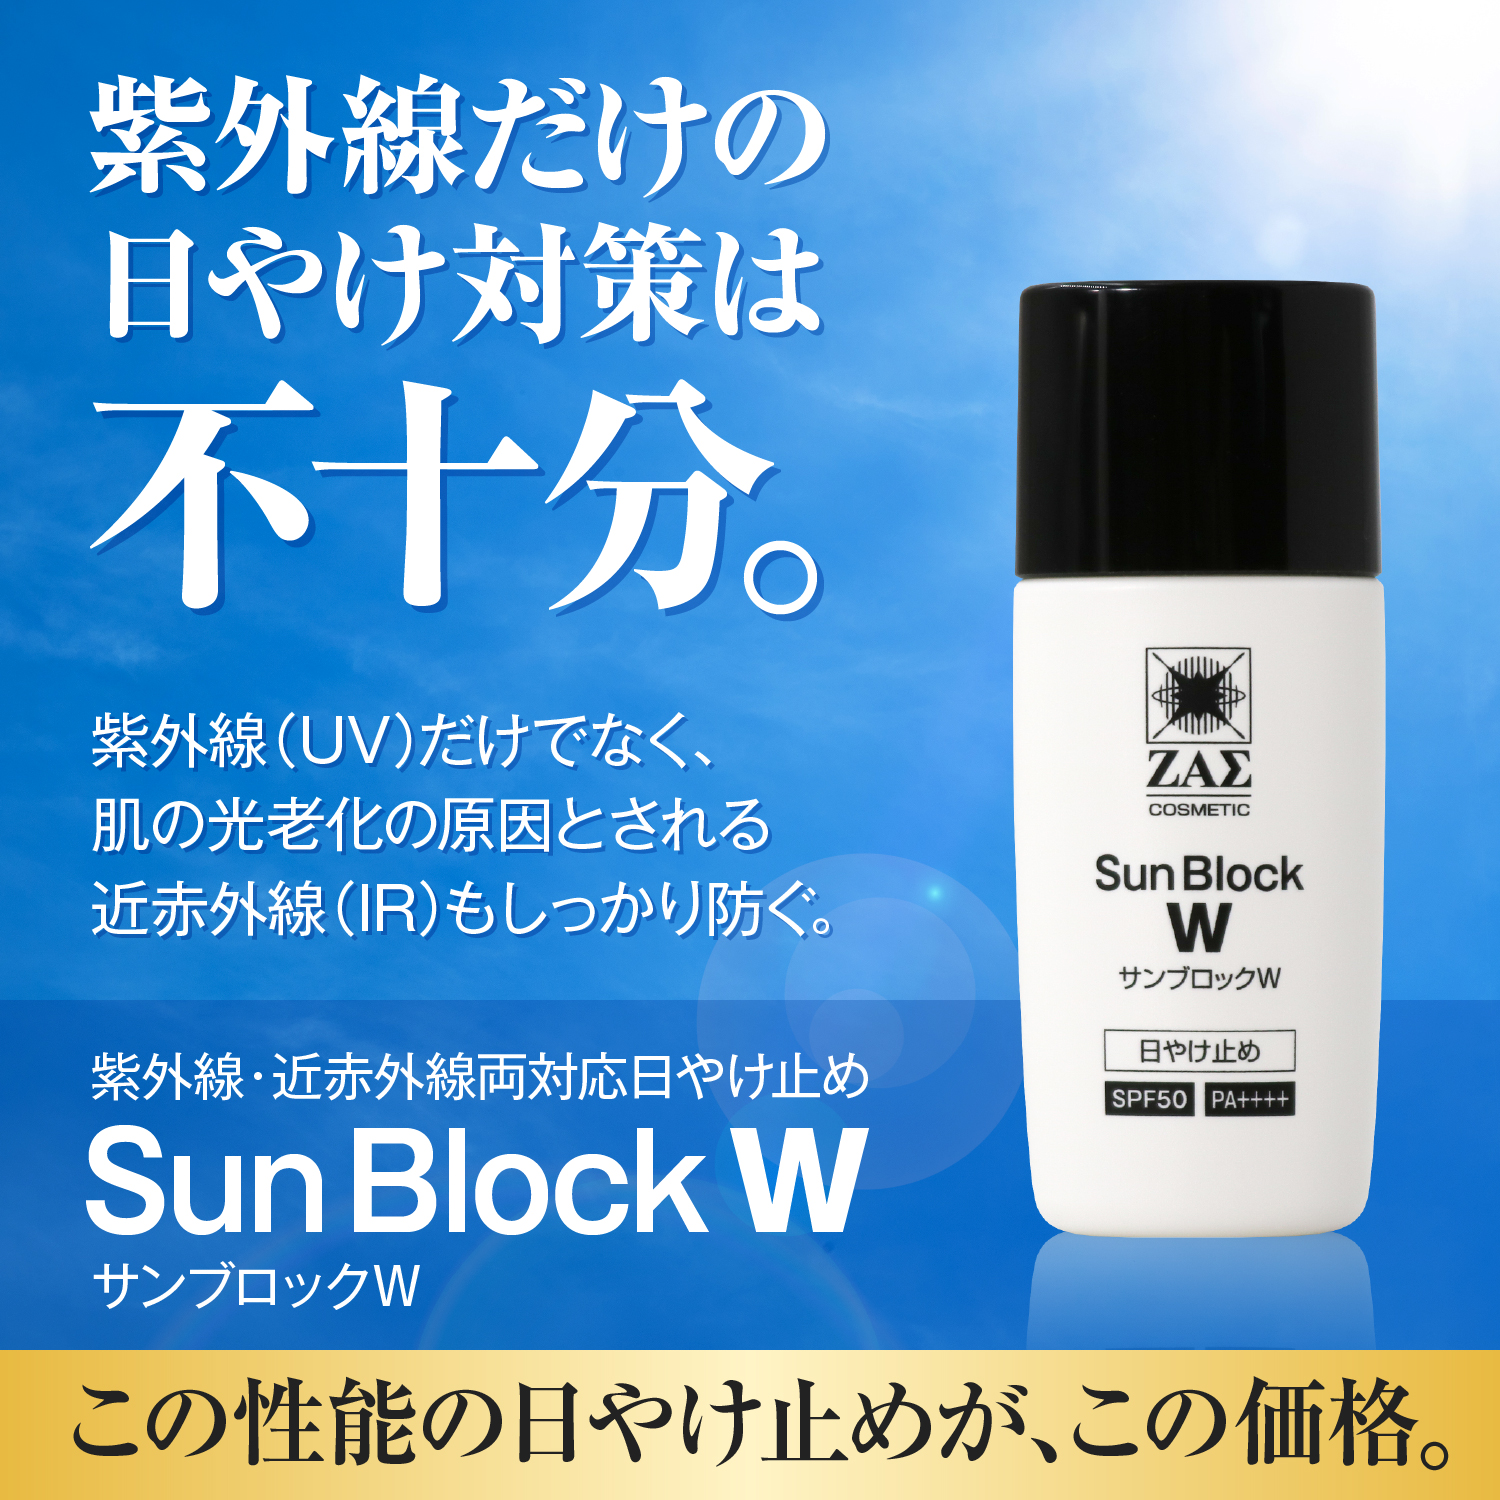 日焼け止めクリーム サンブロックW SPF50 PA++++ 紫外線 UV 近